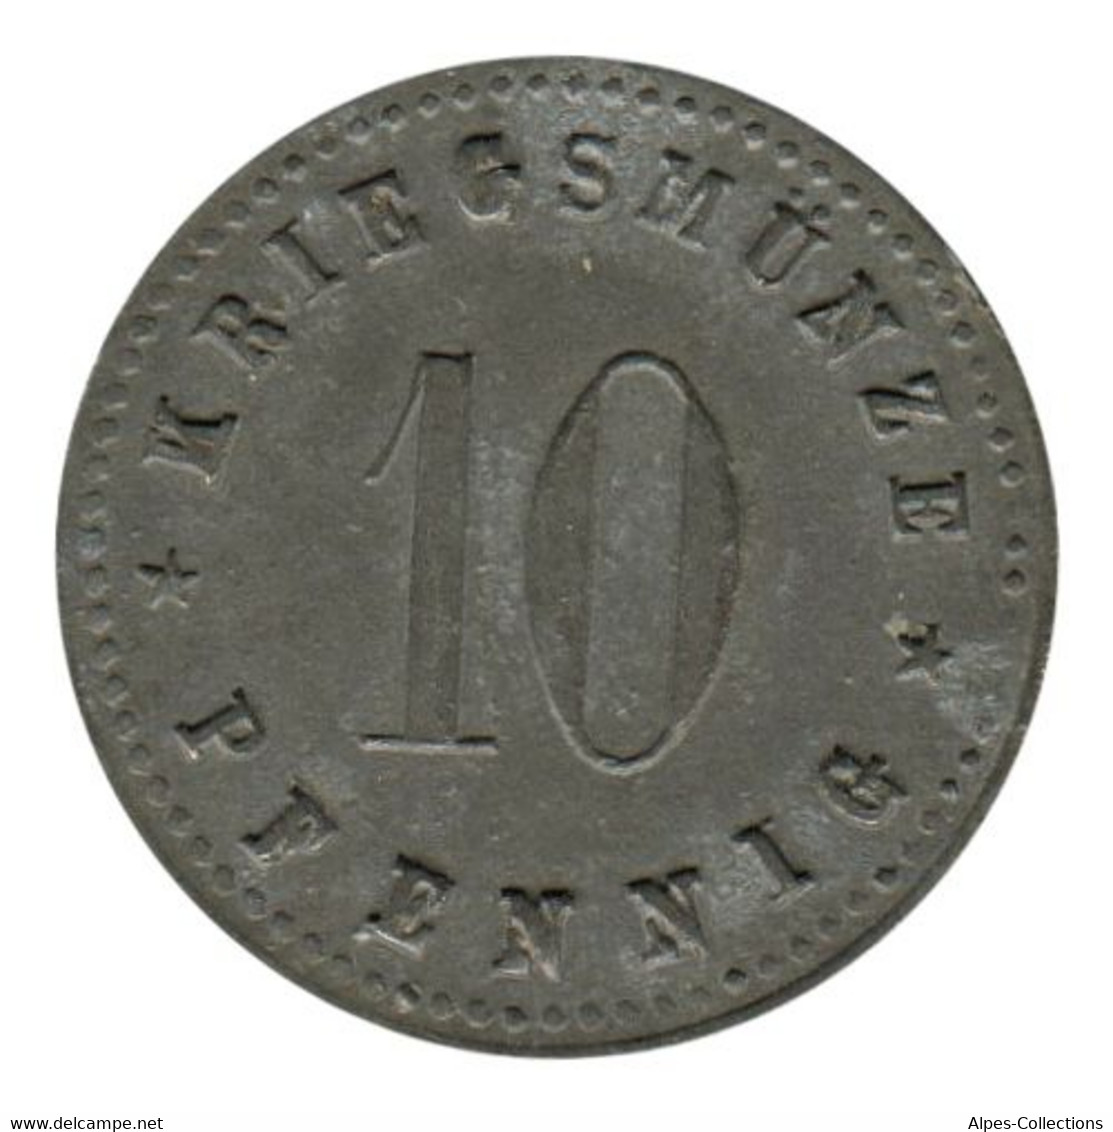 ALLEMAGNE - NEUS-ULM - 10.1 - Monnaie De Nécessité - 10 Pfennig  1917 - Monedas/ De Necesidad